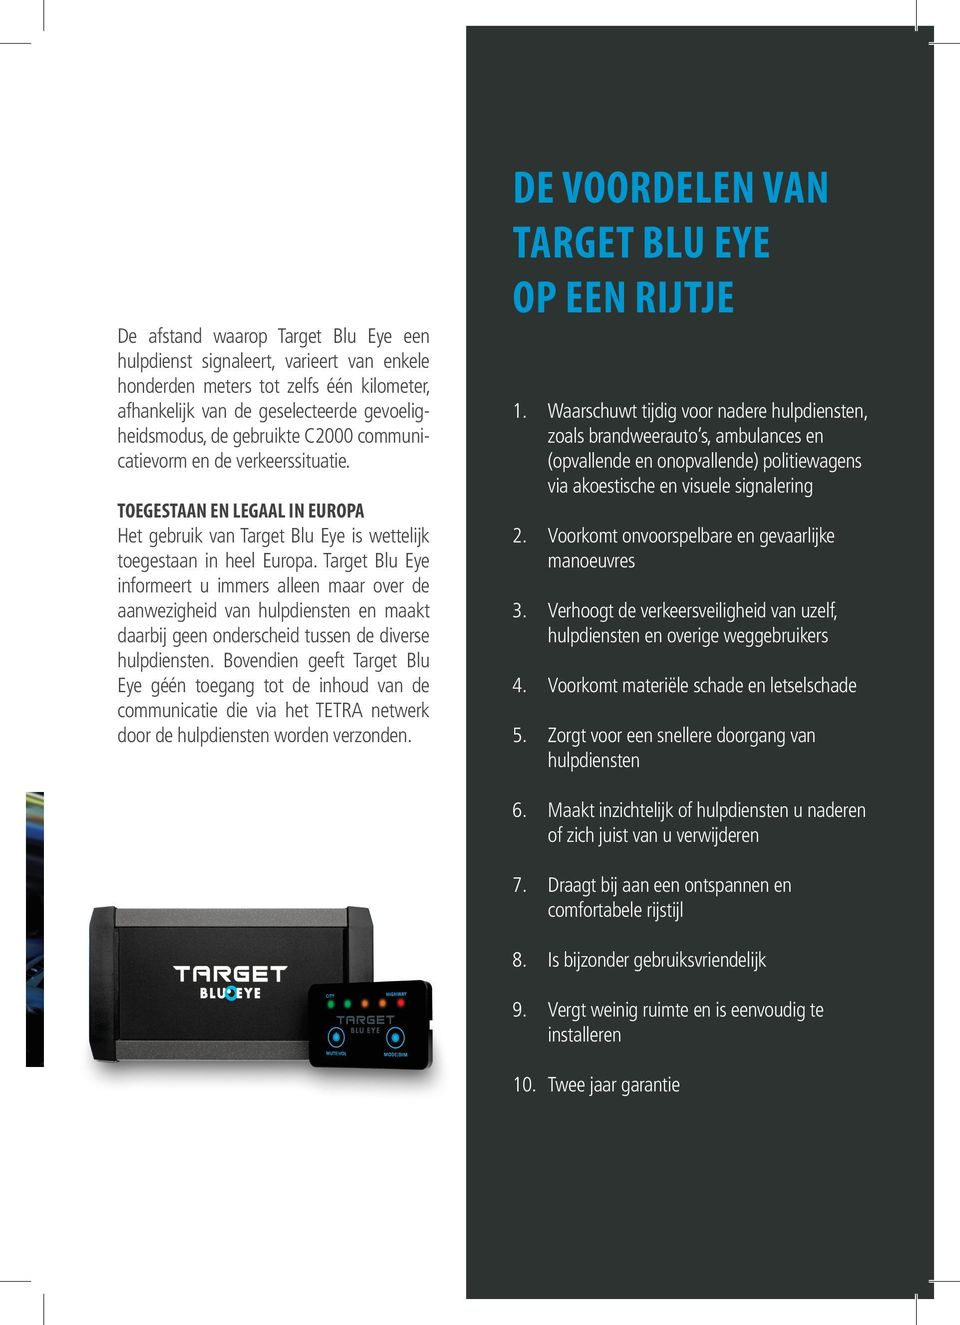 Target Blu Eye informeert u immers alleen maar over de aanwezigheid van hulpdiensten en maakt daarbij geen onderscheid tussen de diverse hulpdiensten.